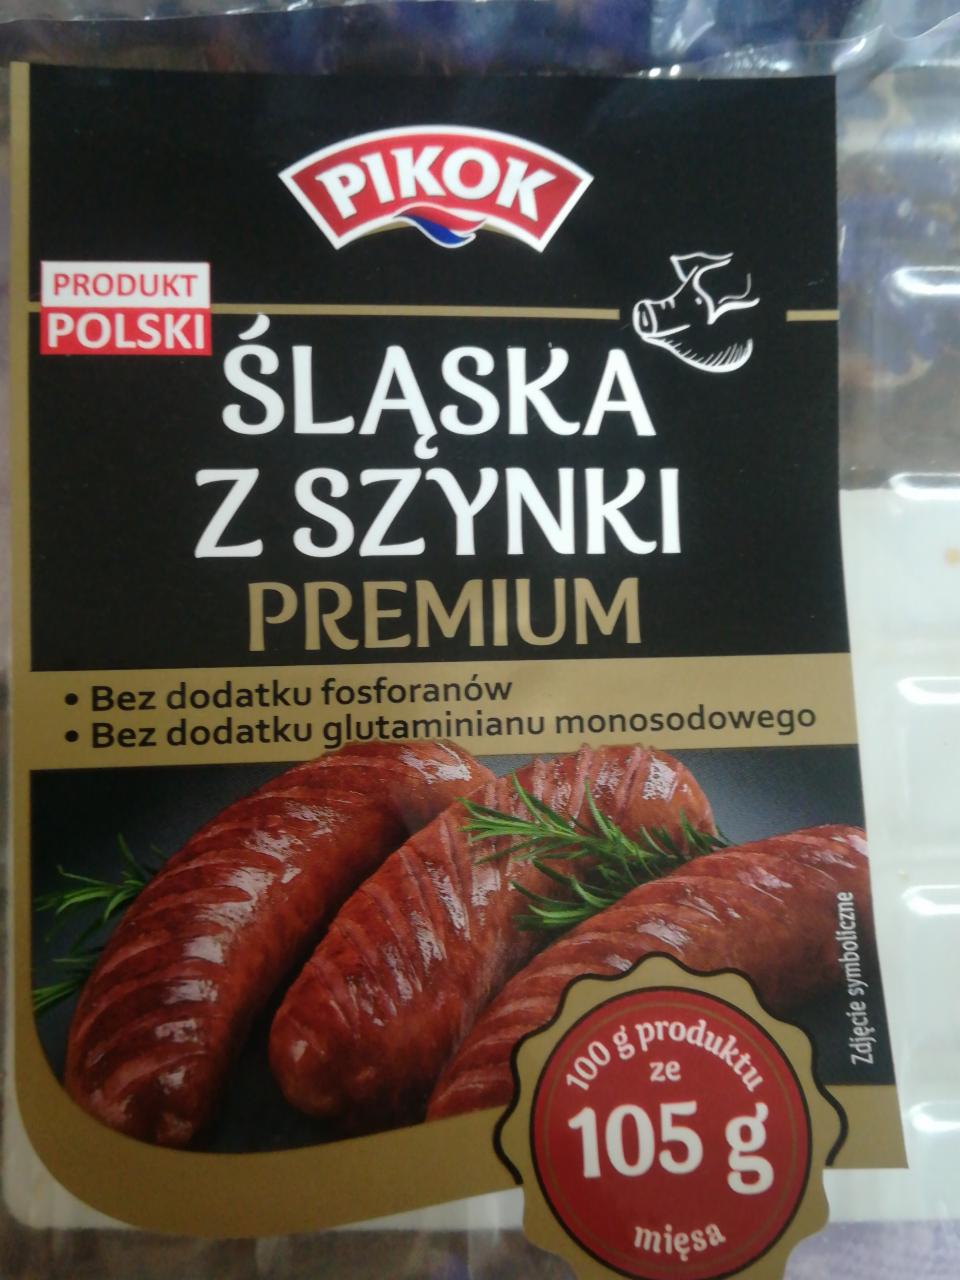 Zdjęcia - Śląska z szynki Pikok